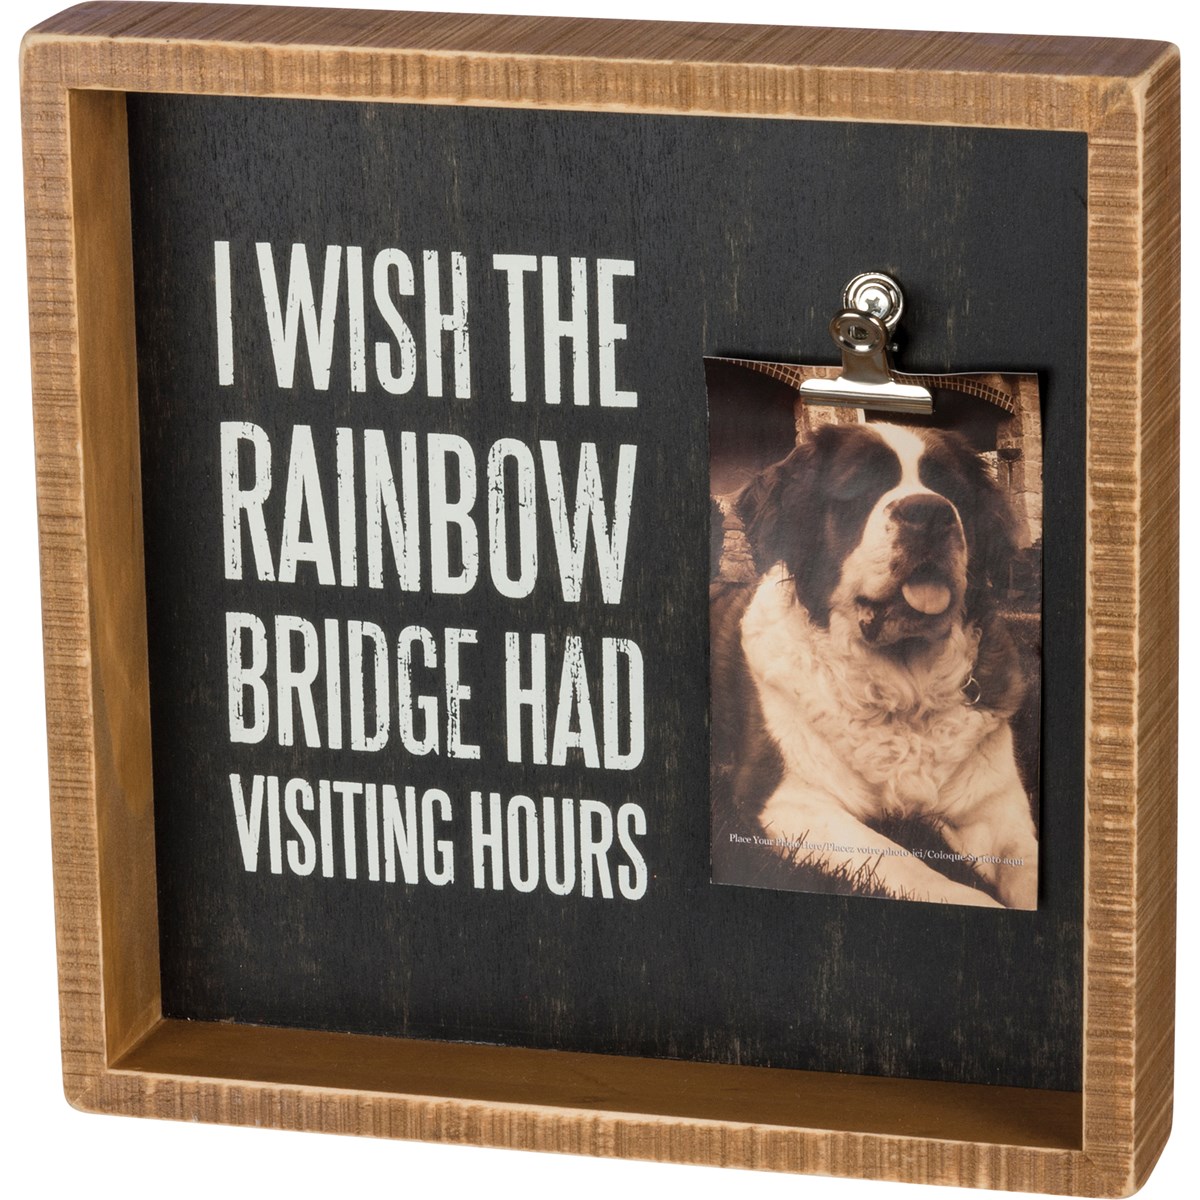 Inset Box Frame - I Wish The Rainbow Bridge - 10" x 10" x 2", Fits 4" x 6" Photo - Wood, Metal